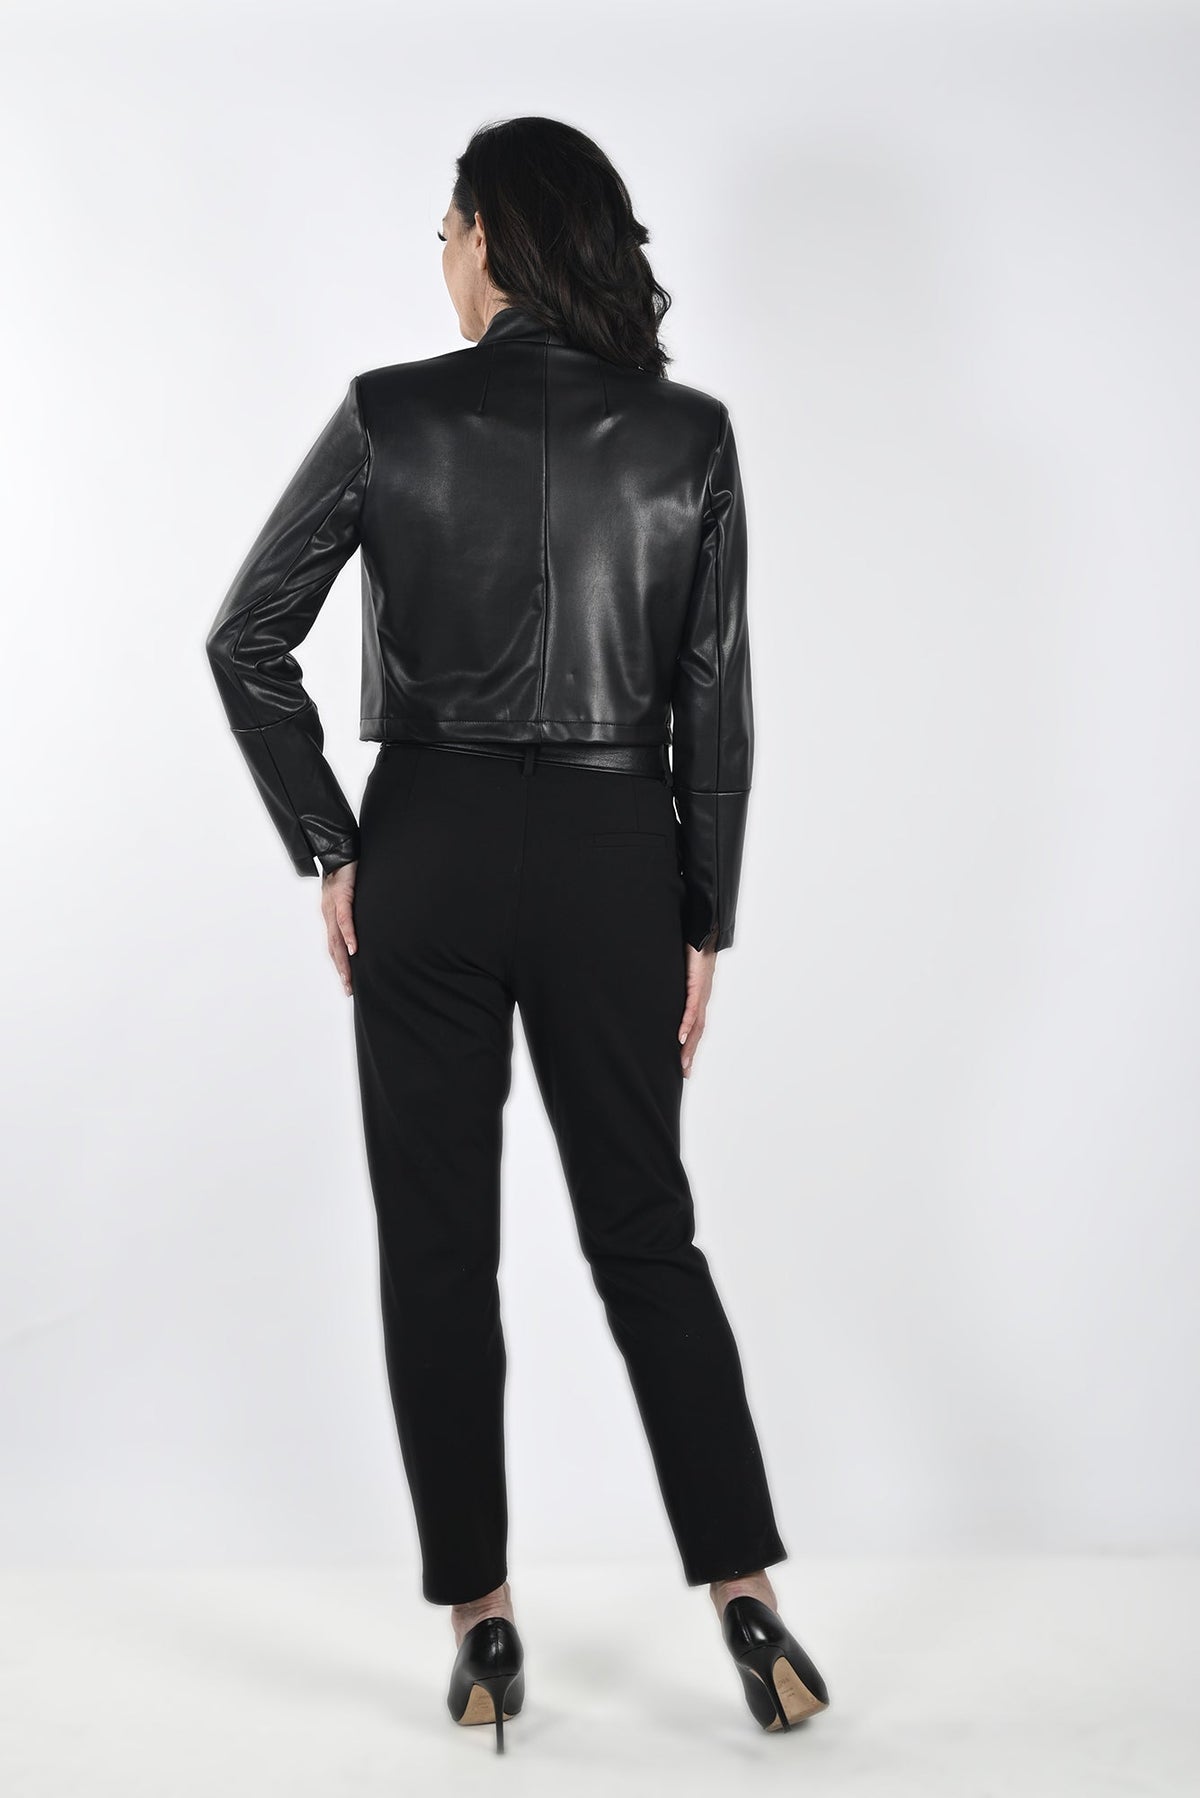 Jacket/Veste pour femme par Frank Lyman | 233246 BLACK | Boutique Vvög, vêtements mode pour homme et femme